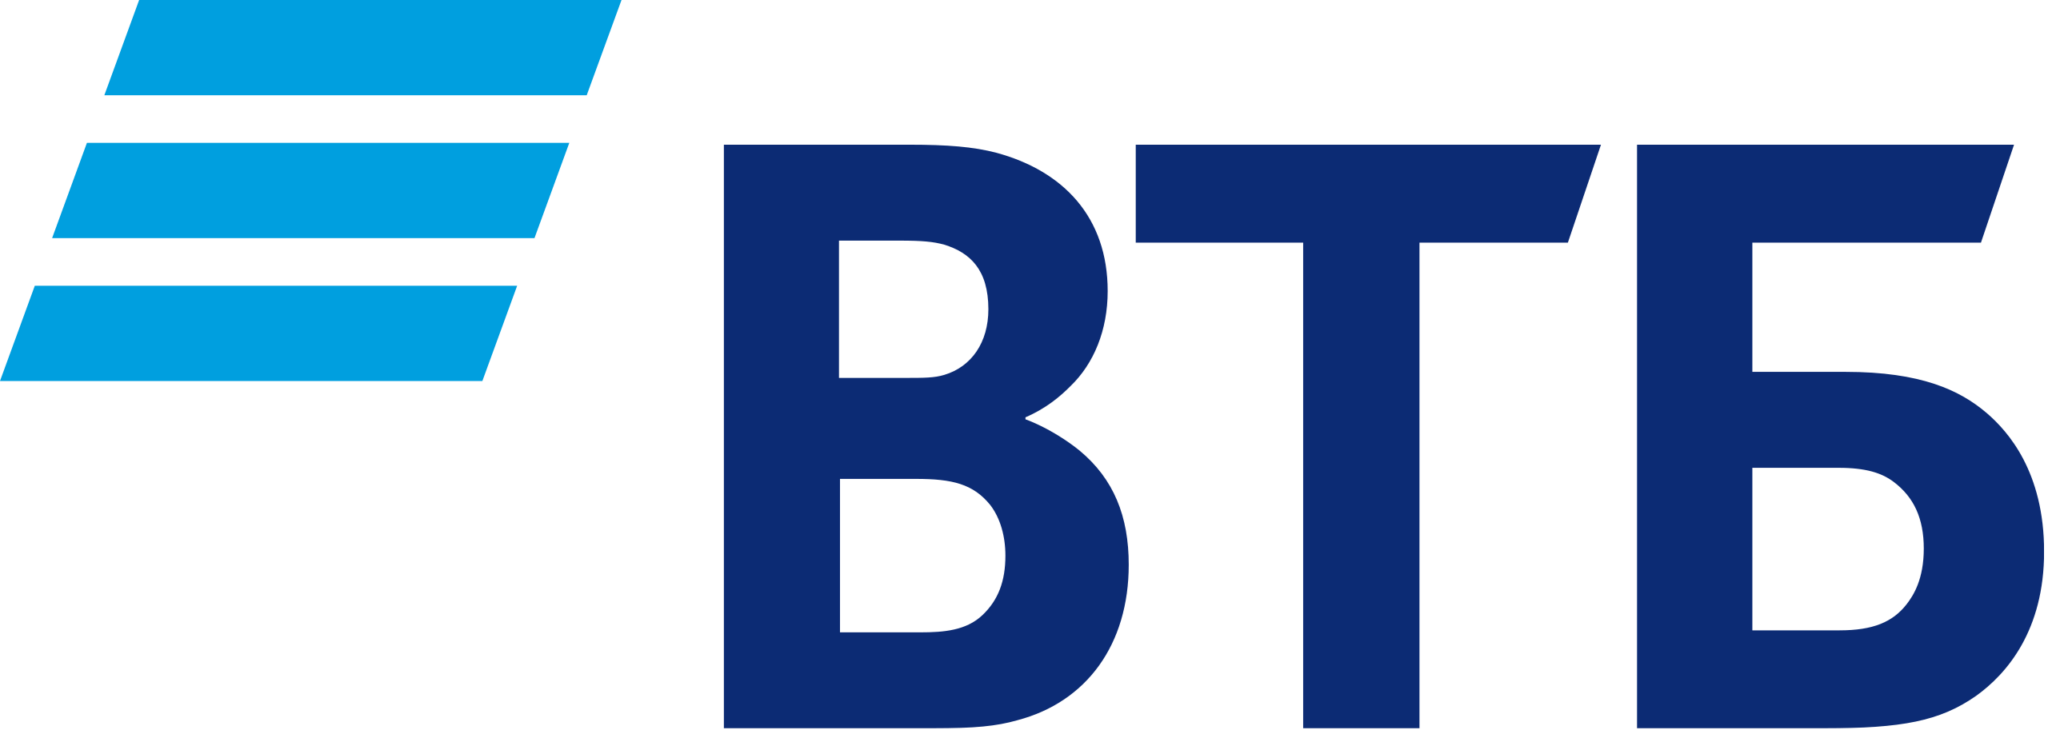 Втб. ВТБ логотип прозрачный. Лого ВТБ на прозрачном фоне. Логотип ВТБ банка на прозрачном фоне. ВТБ регистратор логотип.